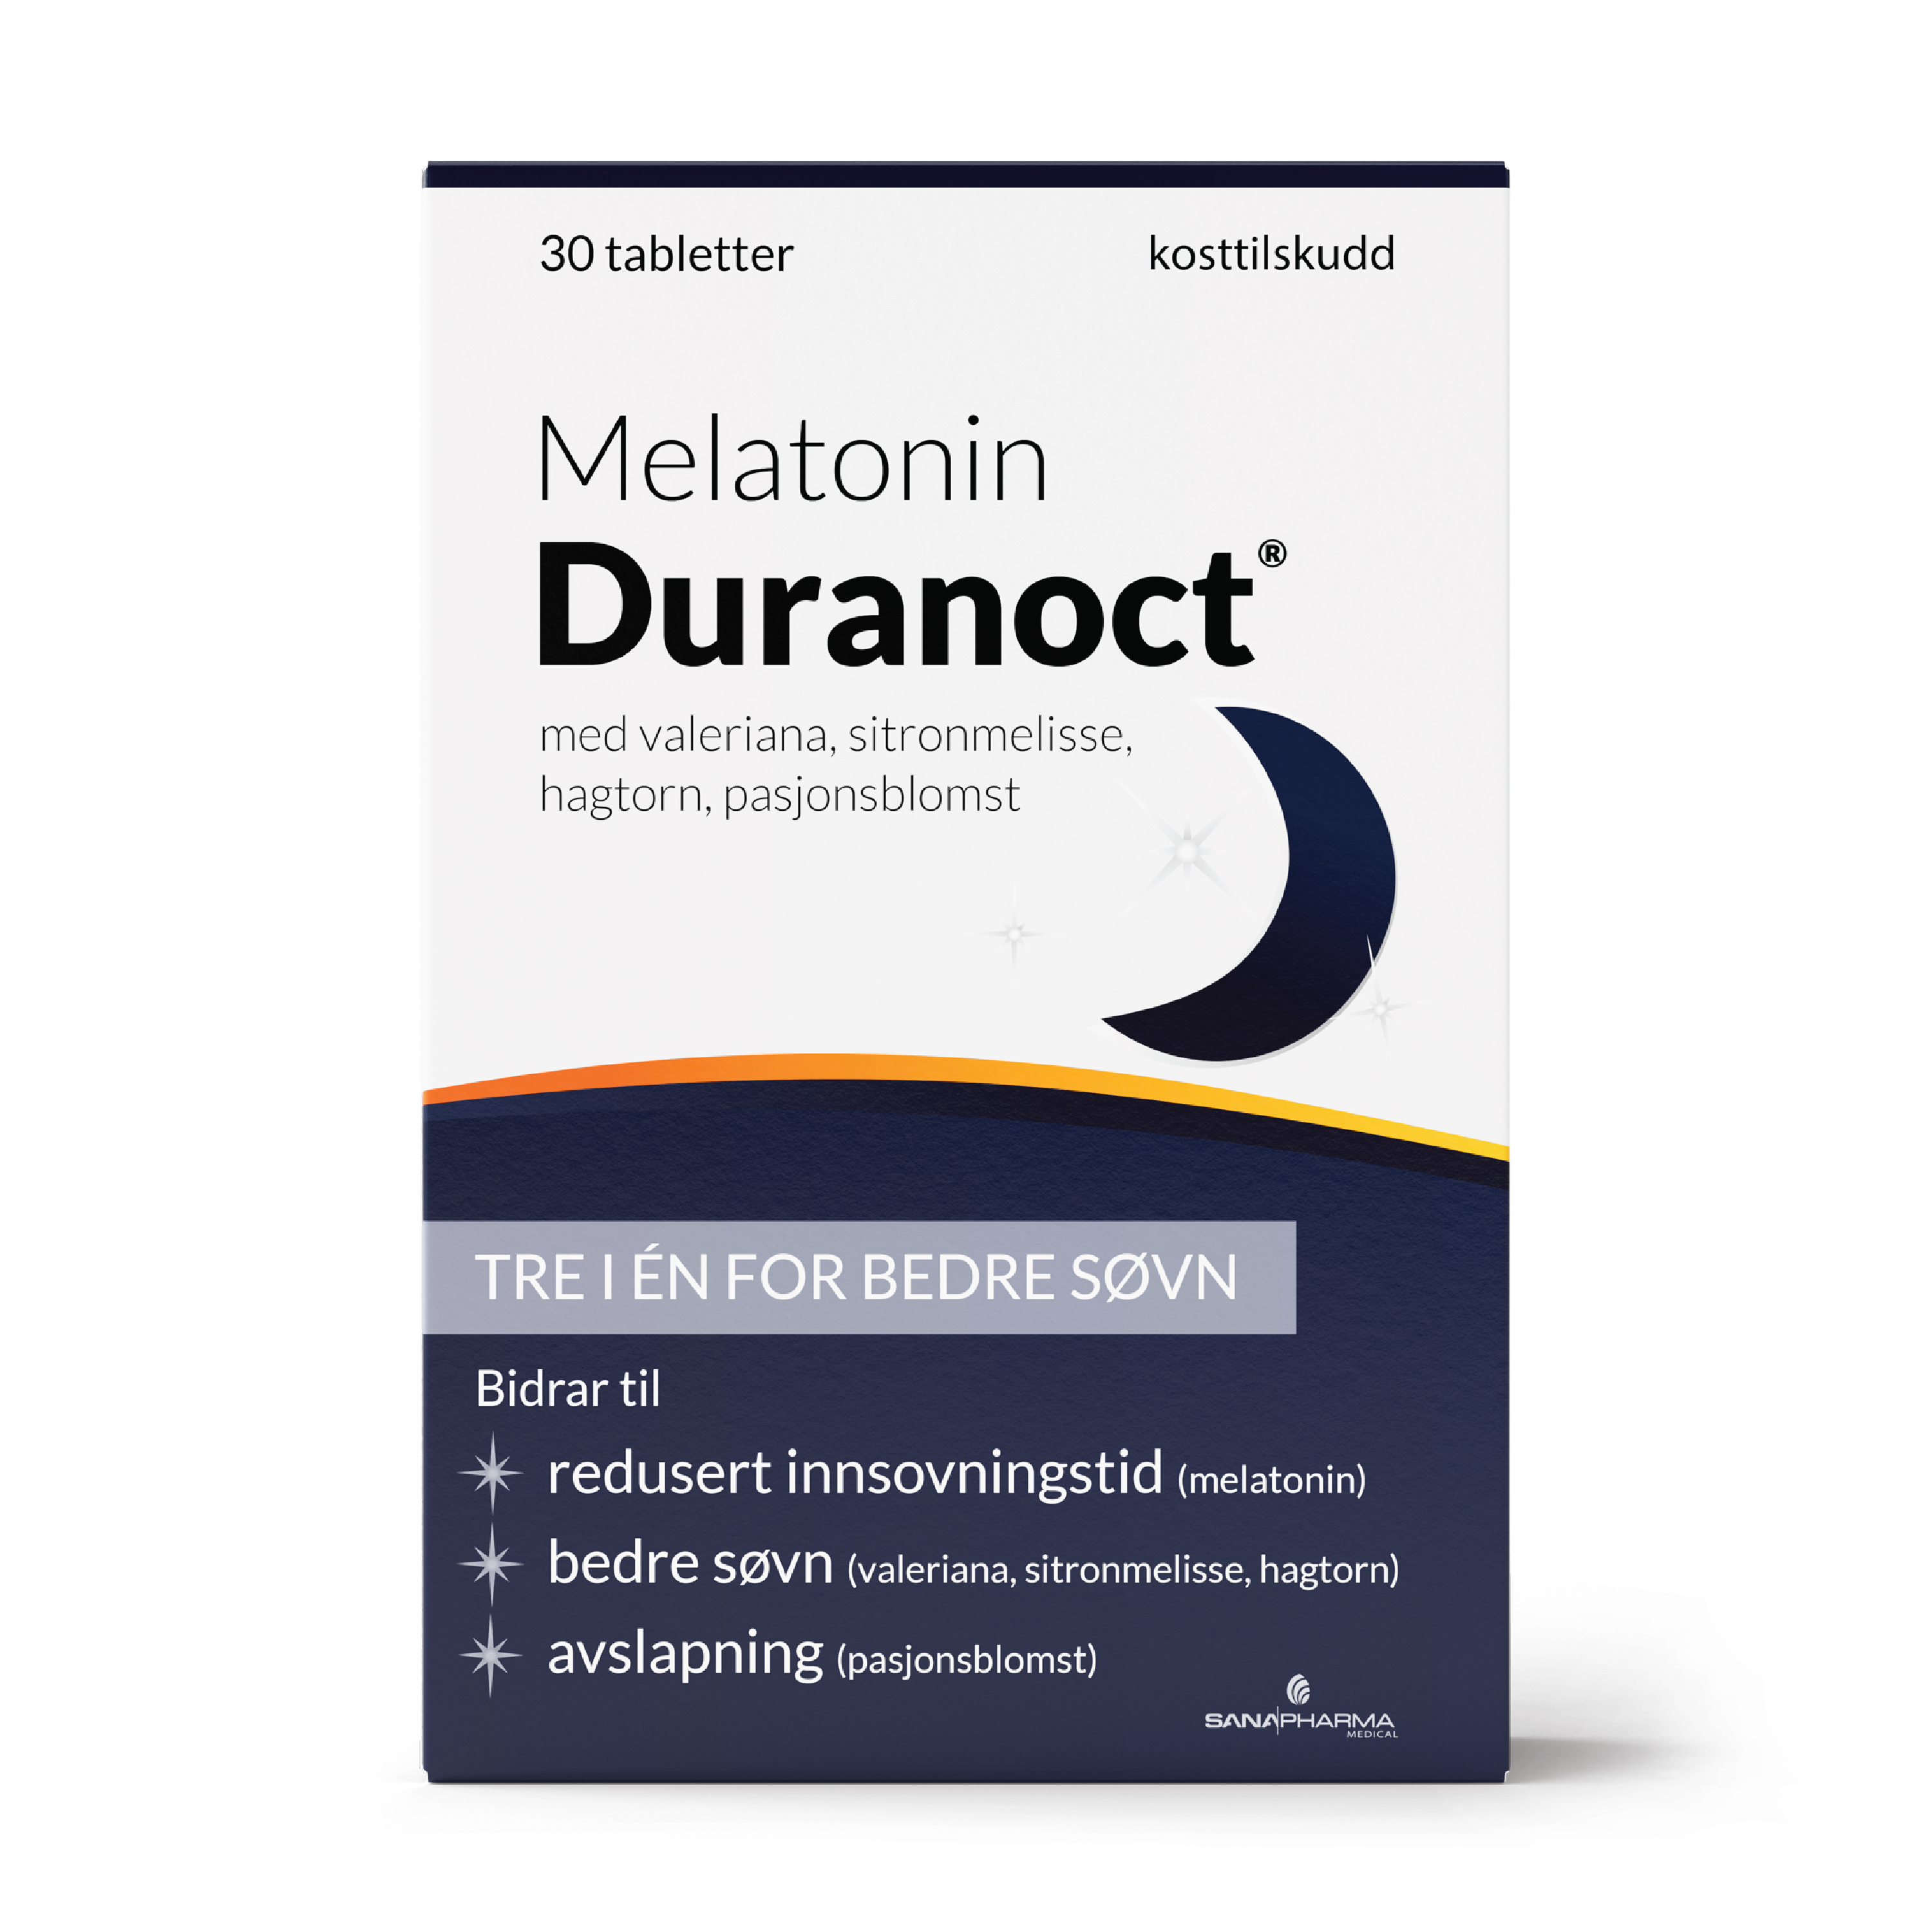 Duranoct Melatonin tabletter, 30 stk.